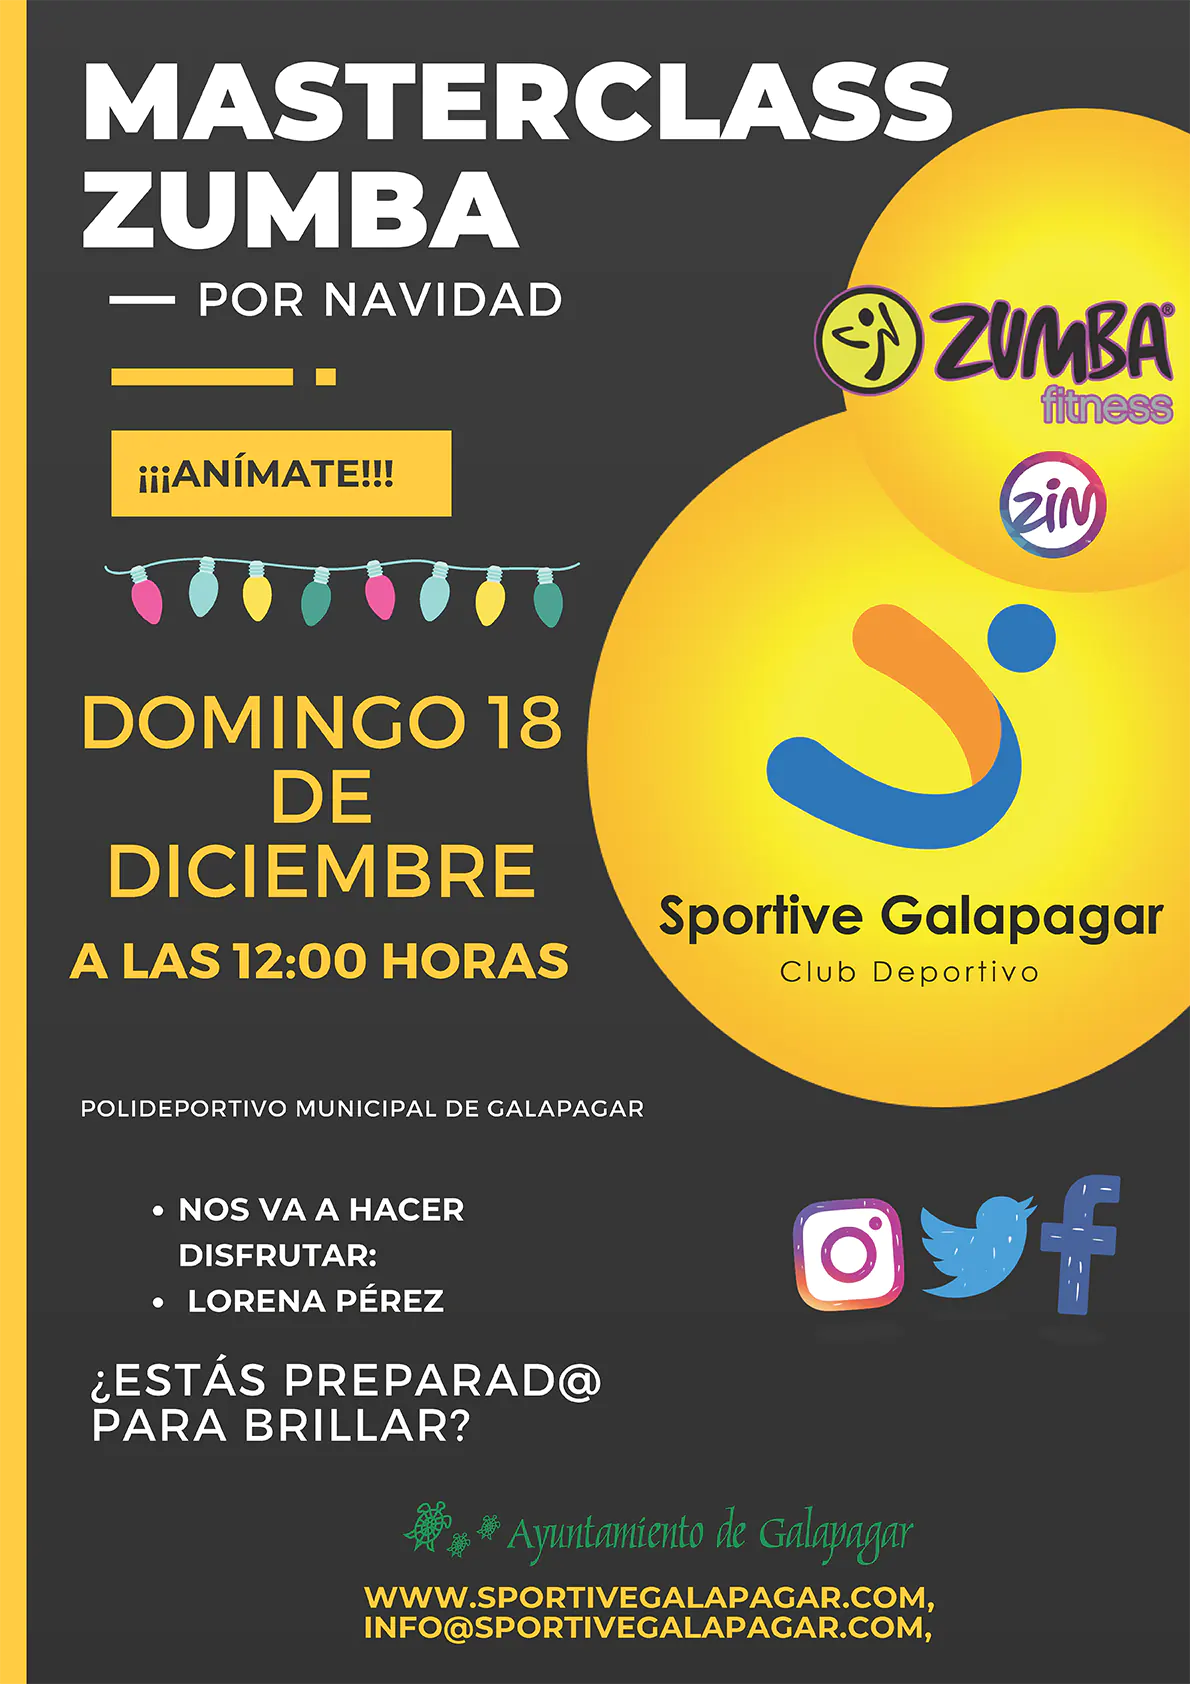 Master Class de Zumba por Navidad - Sportive Galapagar